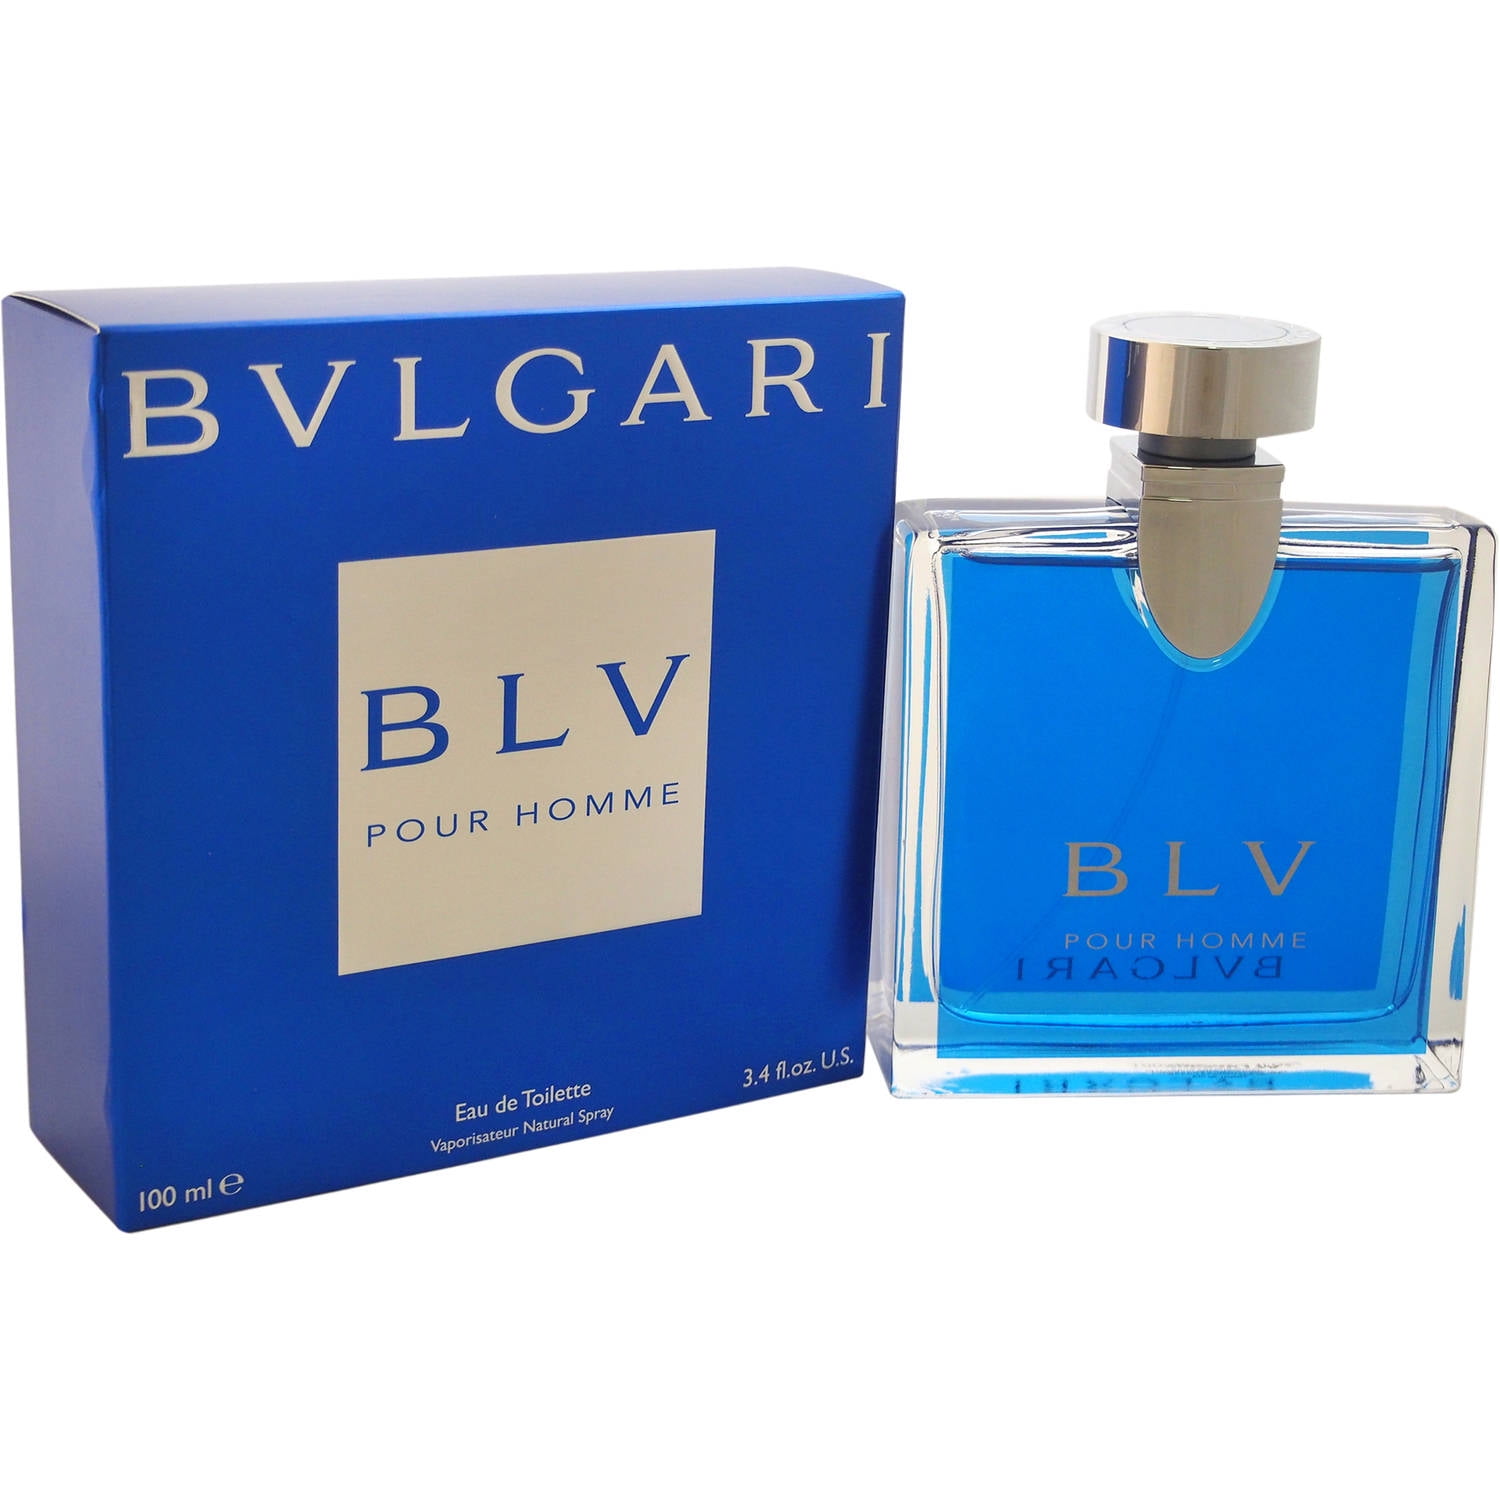 Bvlgari Blv by Bvlgari - Buy online